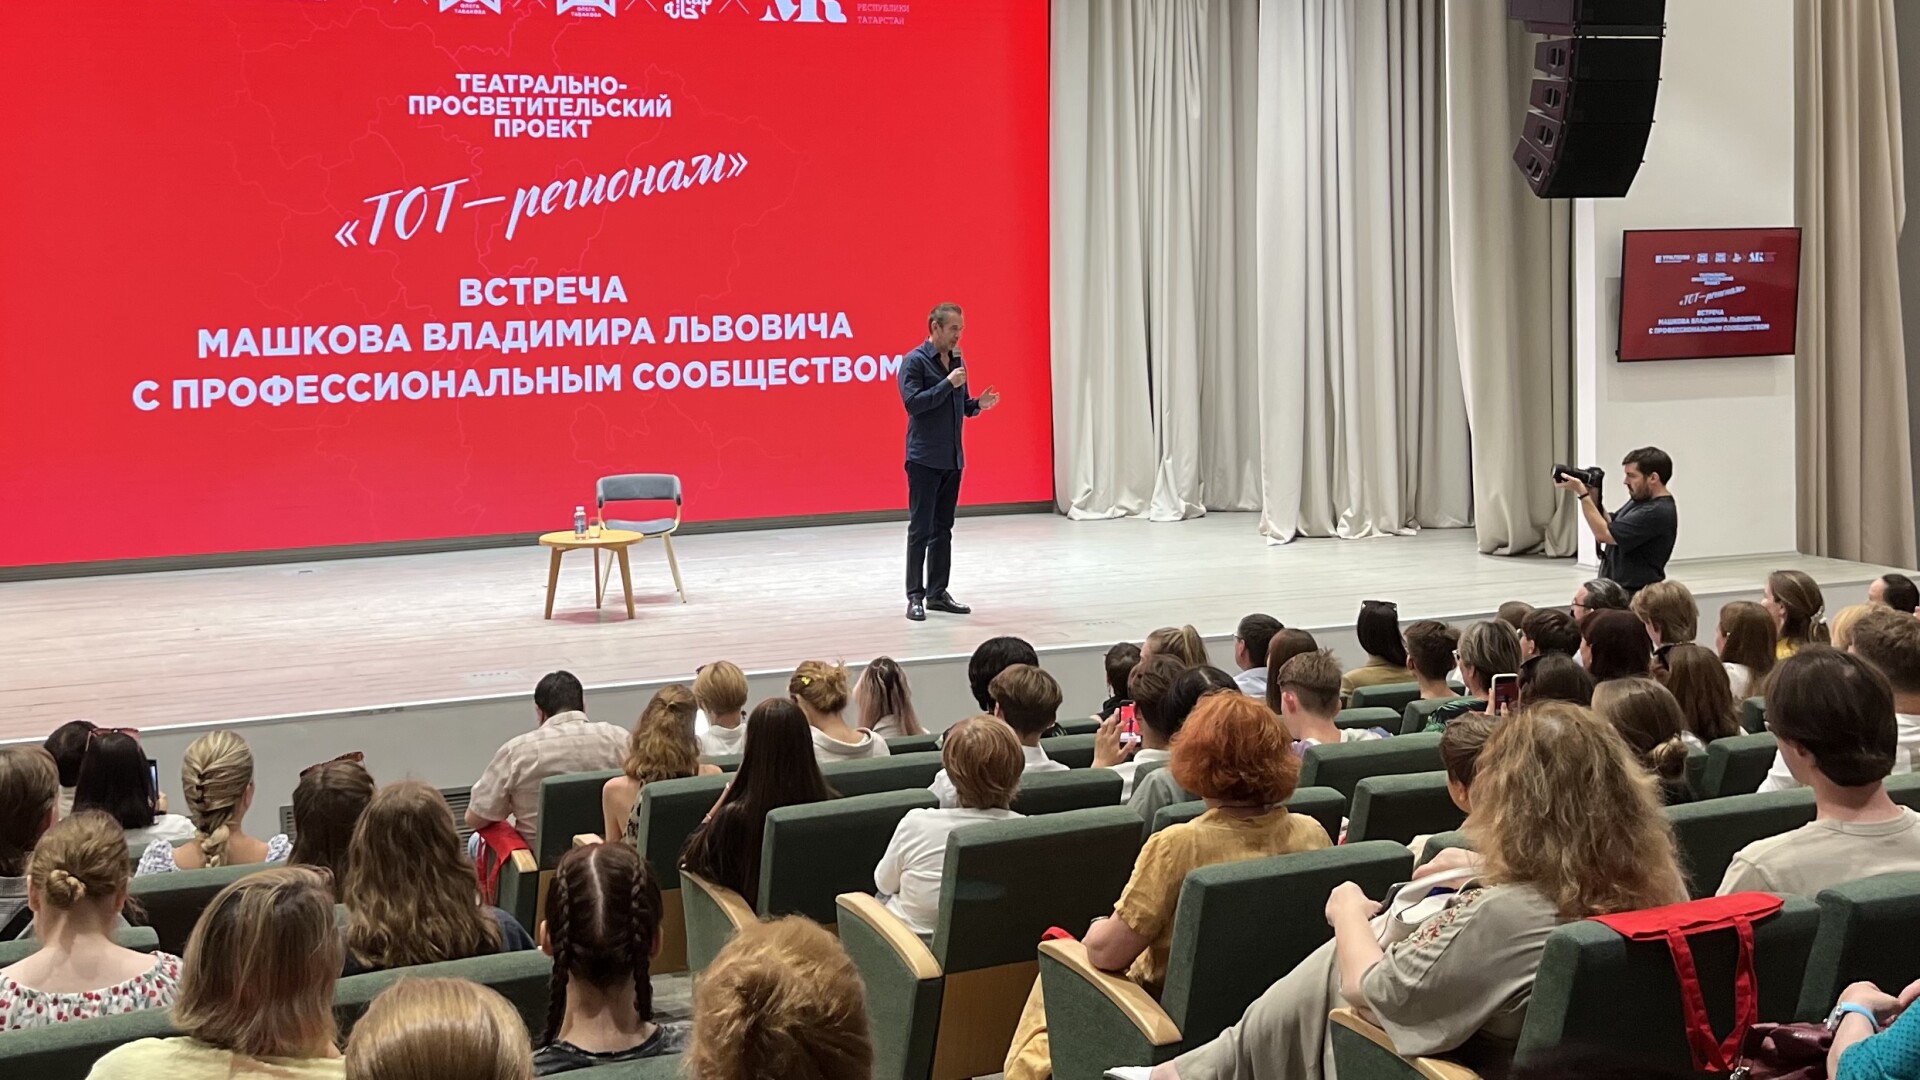 «Профессия с нулевой гарантией»: актер Владимир Машков провел встречу в Казани